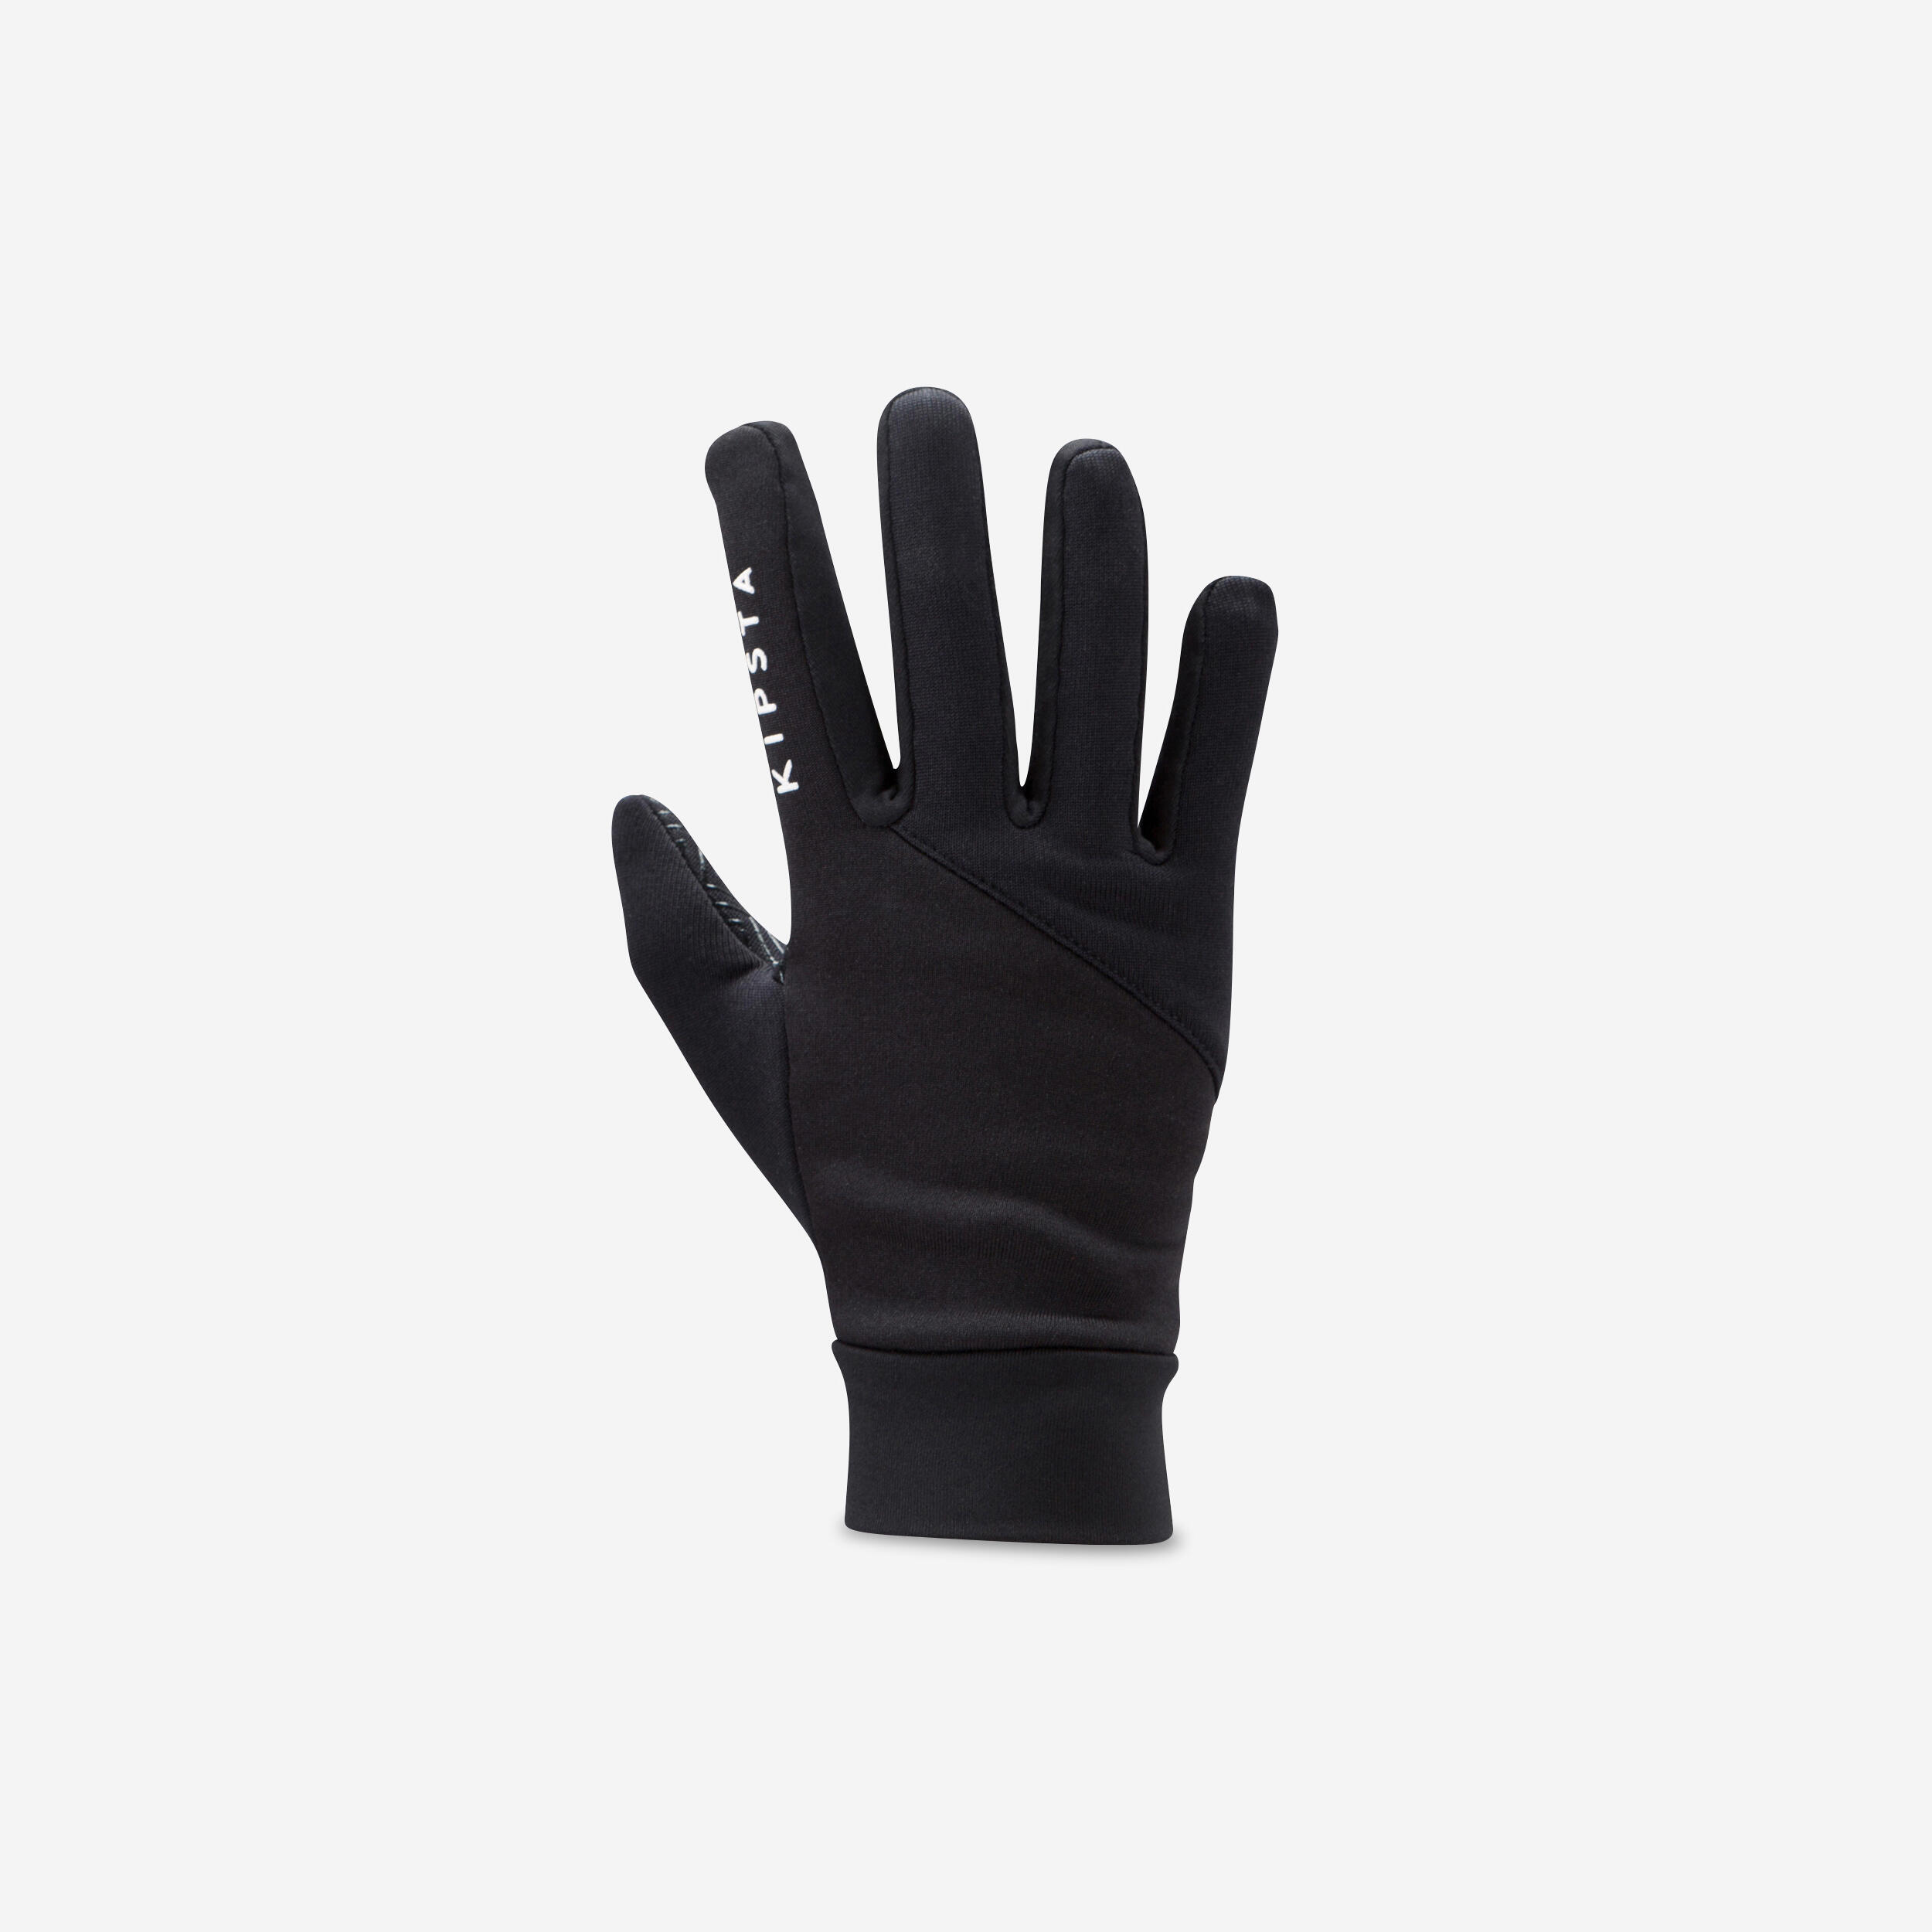 gants keepdry 500 enfant football noir - kipsta